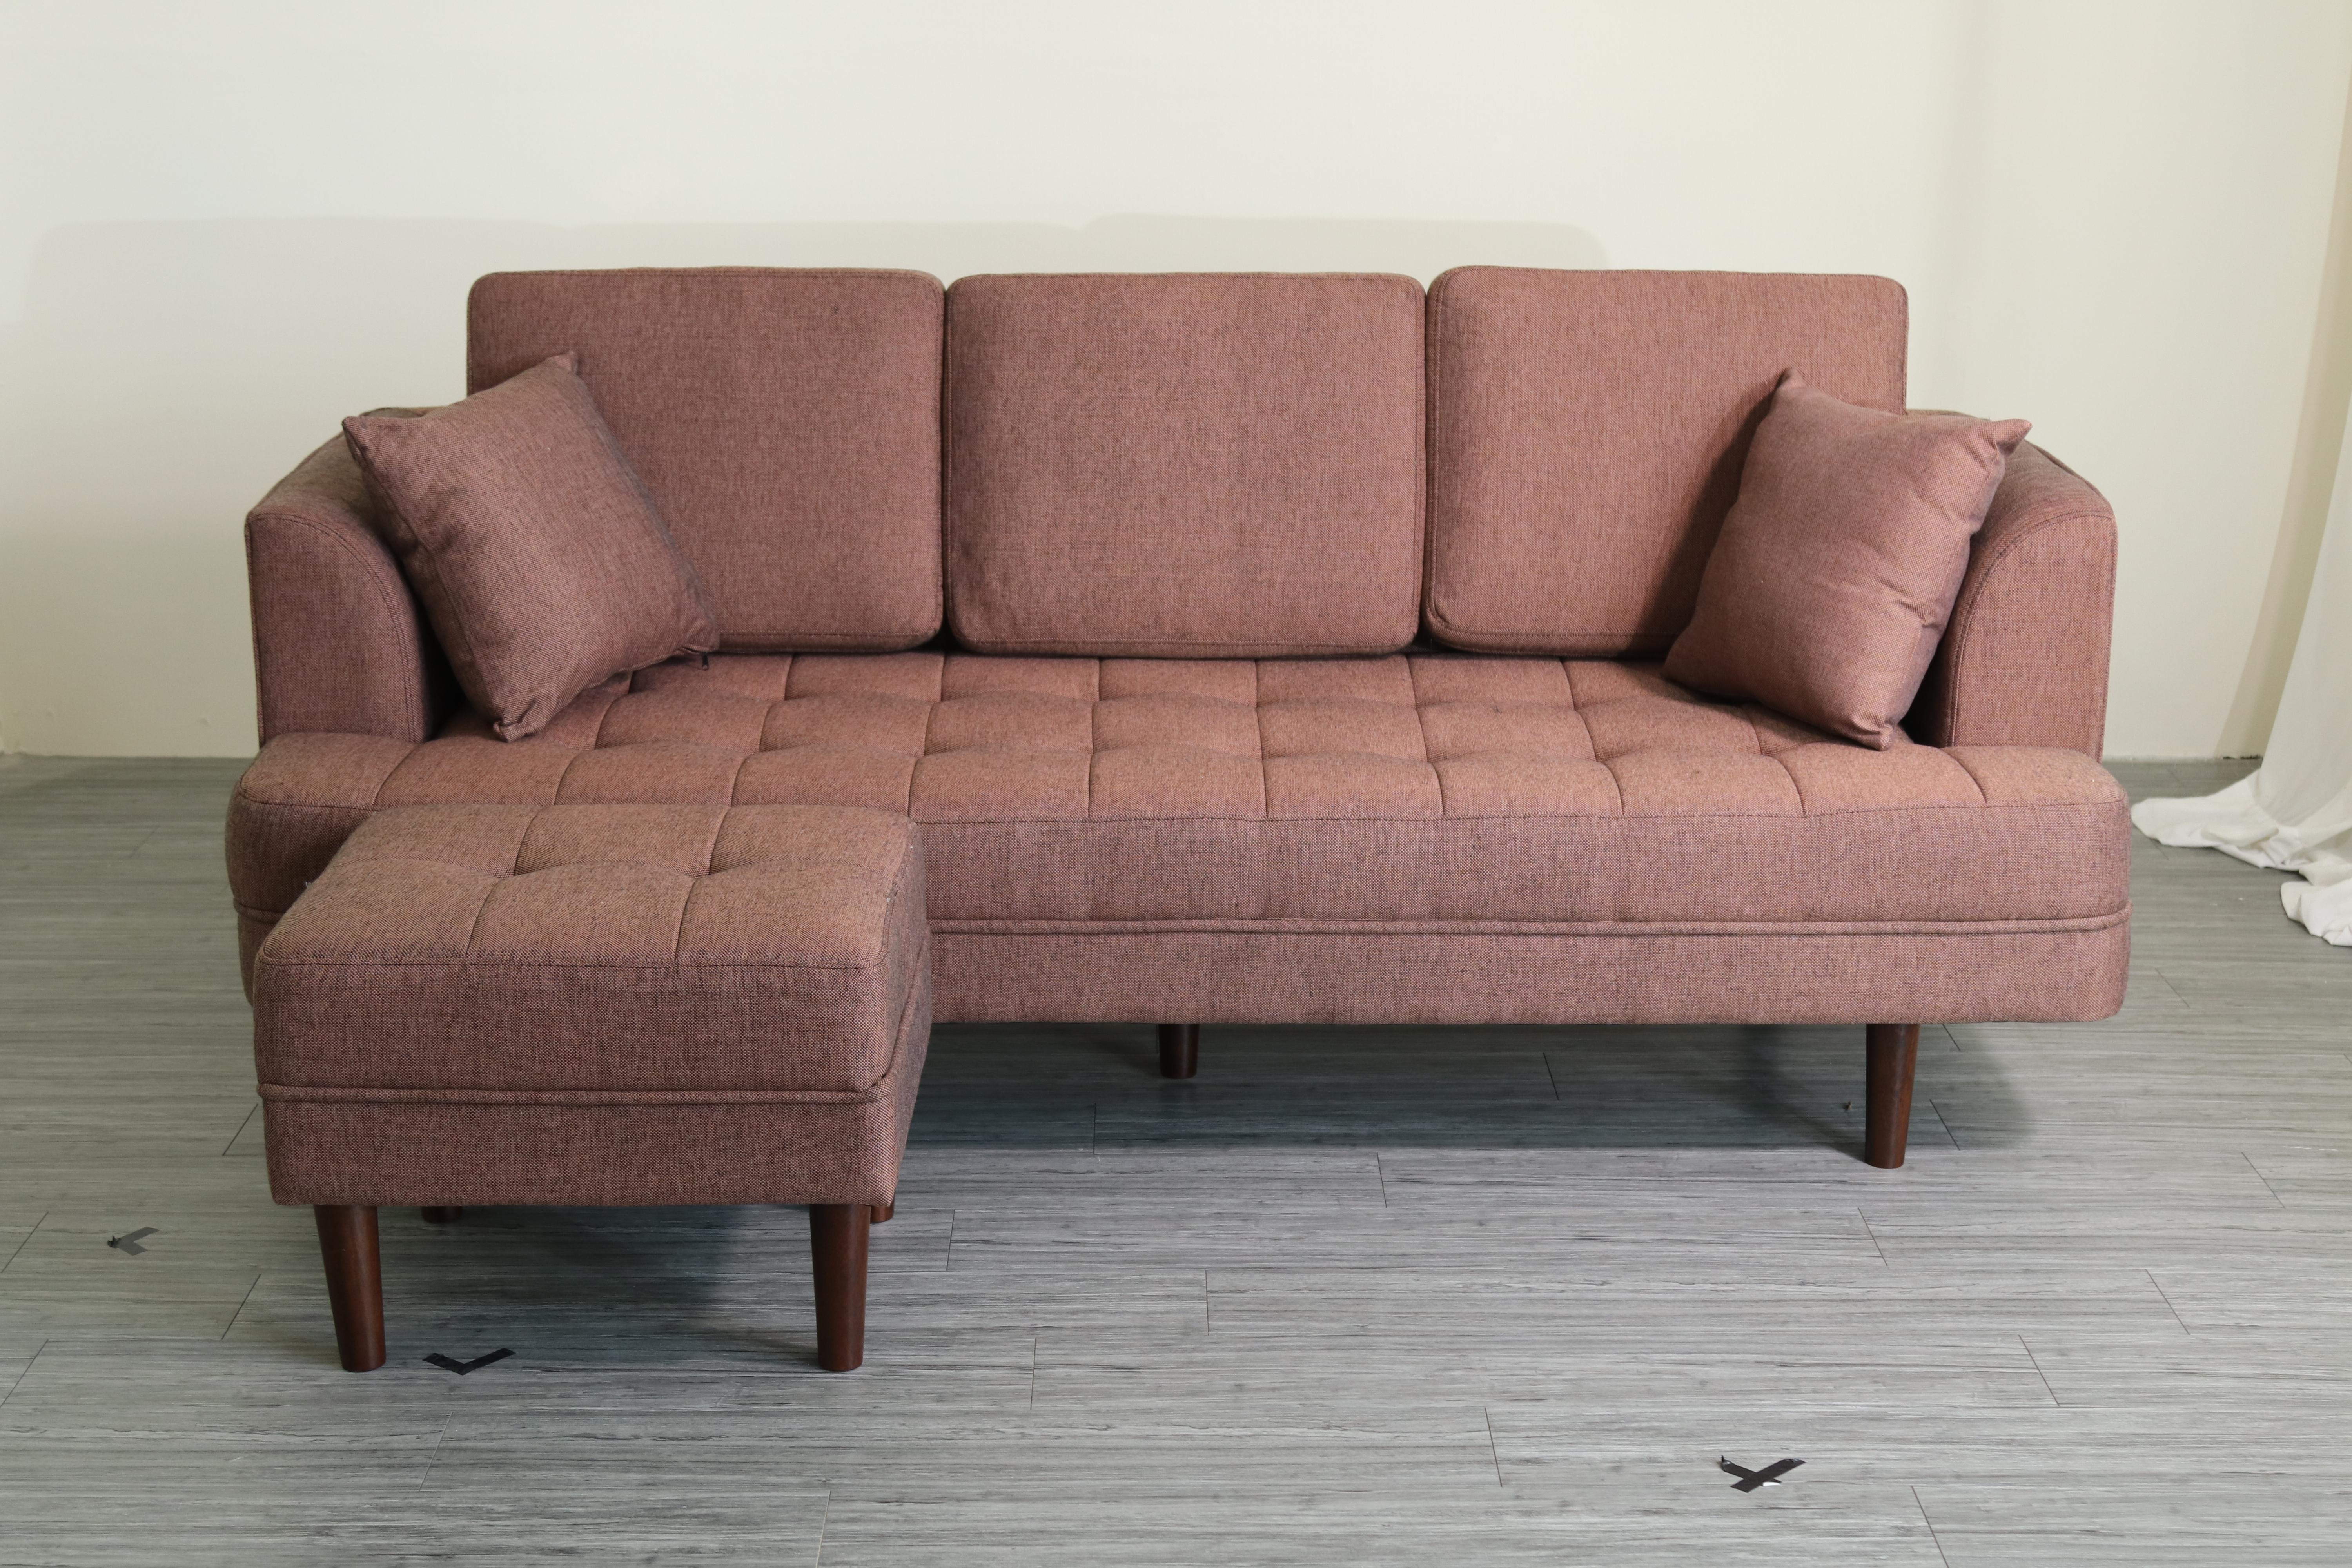 Sofa băng Juno sofa hiện đại màu kem, xám, nâu